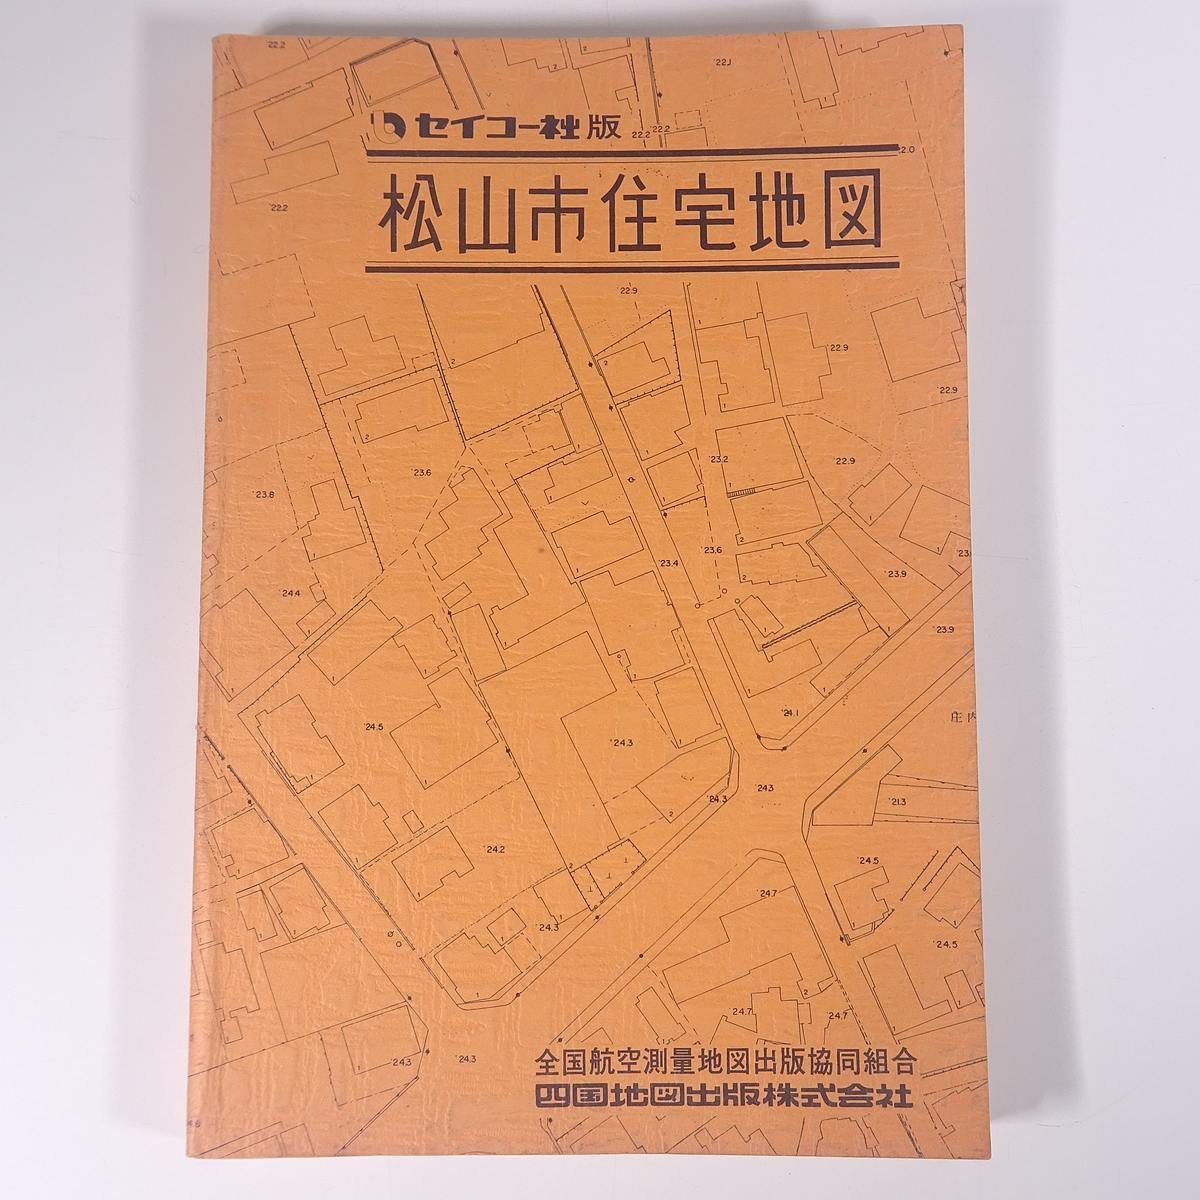  Seiko фирма версия Ehime префектура Matsuyama город карты жилых районов вся страна авиация измерение карта выпускать . такой же комплект . Сикоку карта выпускать акционерное общество 1975 большой книга@ карты жилых районов B5 размер * записывание немного 